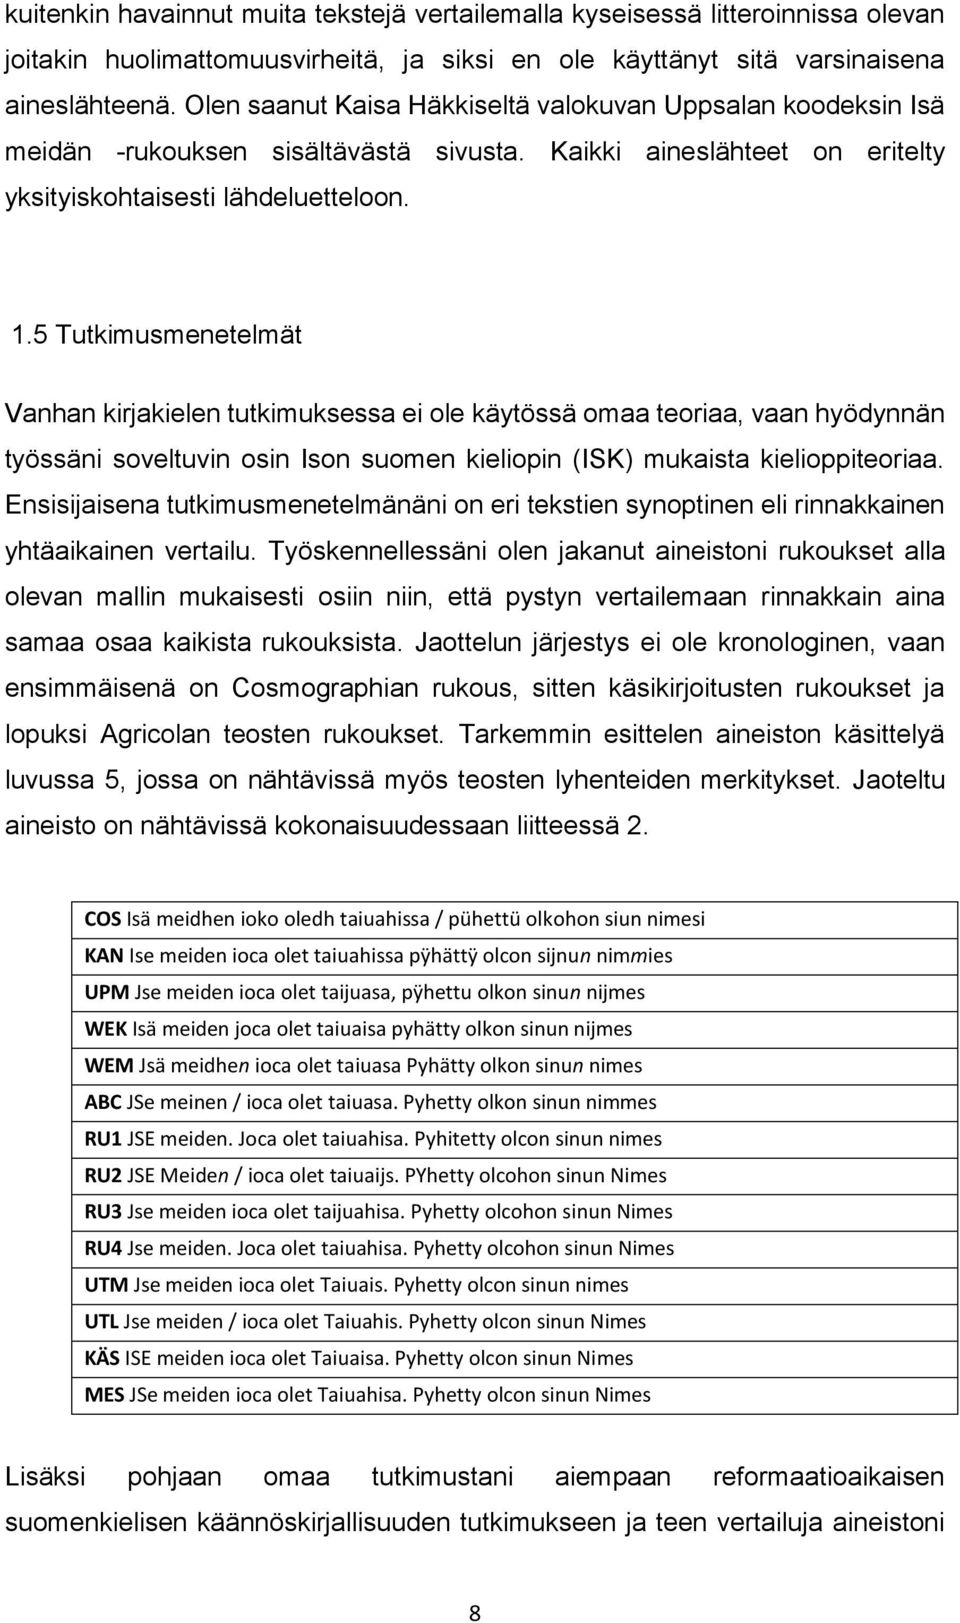 5 Tutkimusmenetelmät Vanhan kirjakielen tutkimuksessa ei ole käytössä omaa teoriaa, vaan hyödynnän työssäni soveltuvin osin Ison suomen kieliopin (ISK) mukaista kielioppiteoriaa.